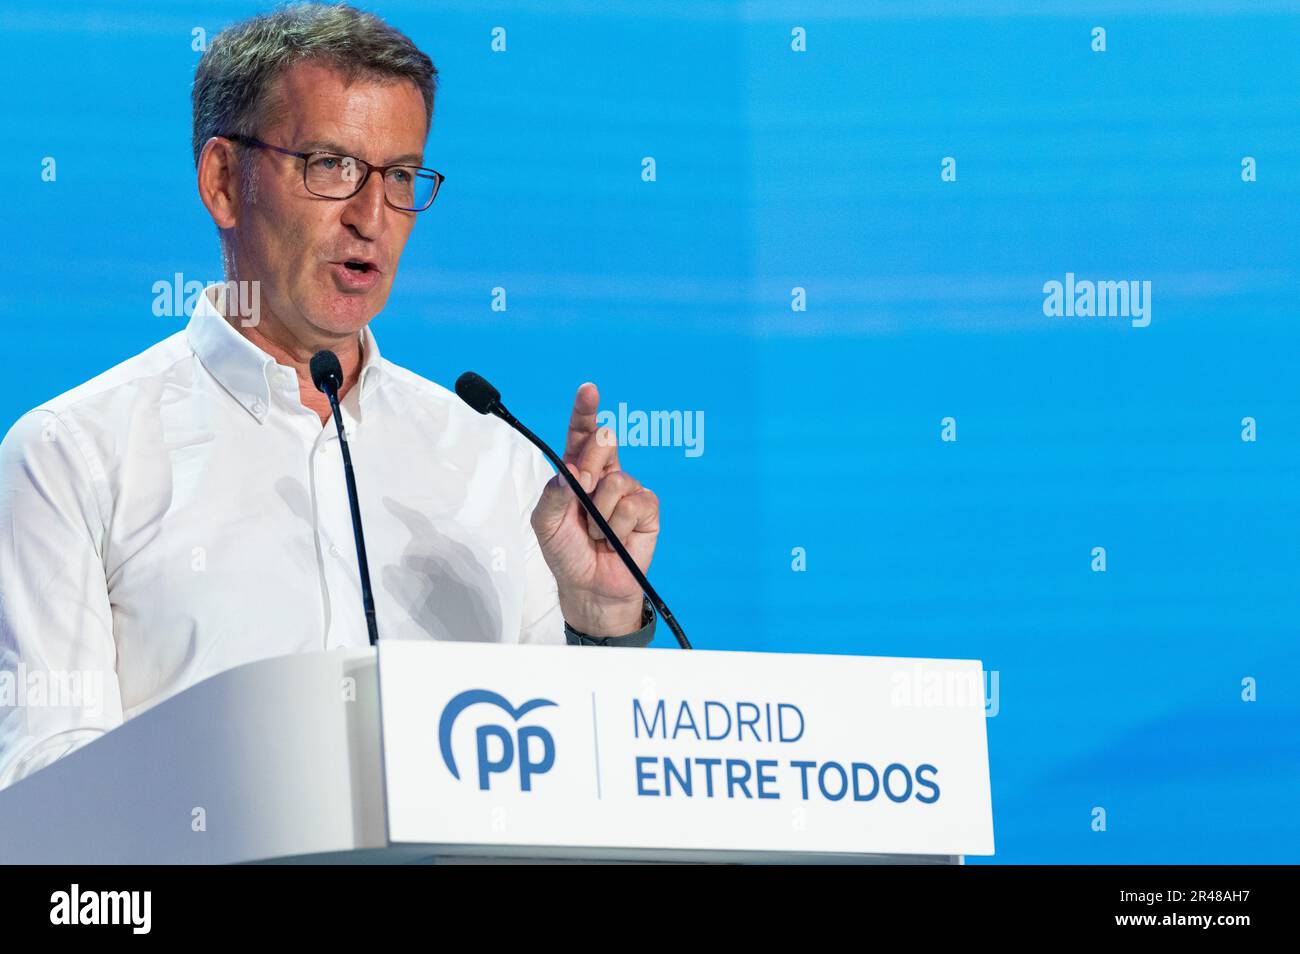 Il leader del Partito popolare Alberto Nuñez Feijoo parla durante il rally di chiusura della campagna elettorale del Partito popolare (PP), in vista delle elezioni regionali che si svolgeranno domenica prossima, il 28 maggio. Foto Stock